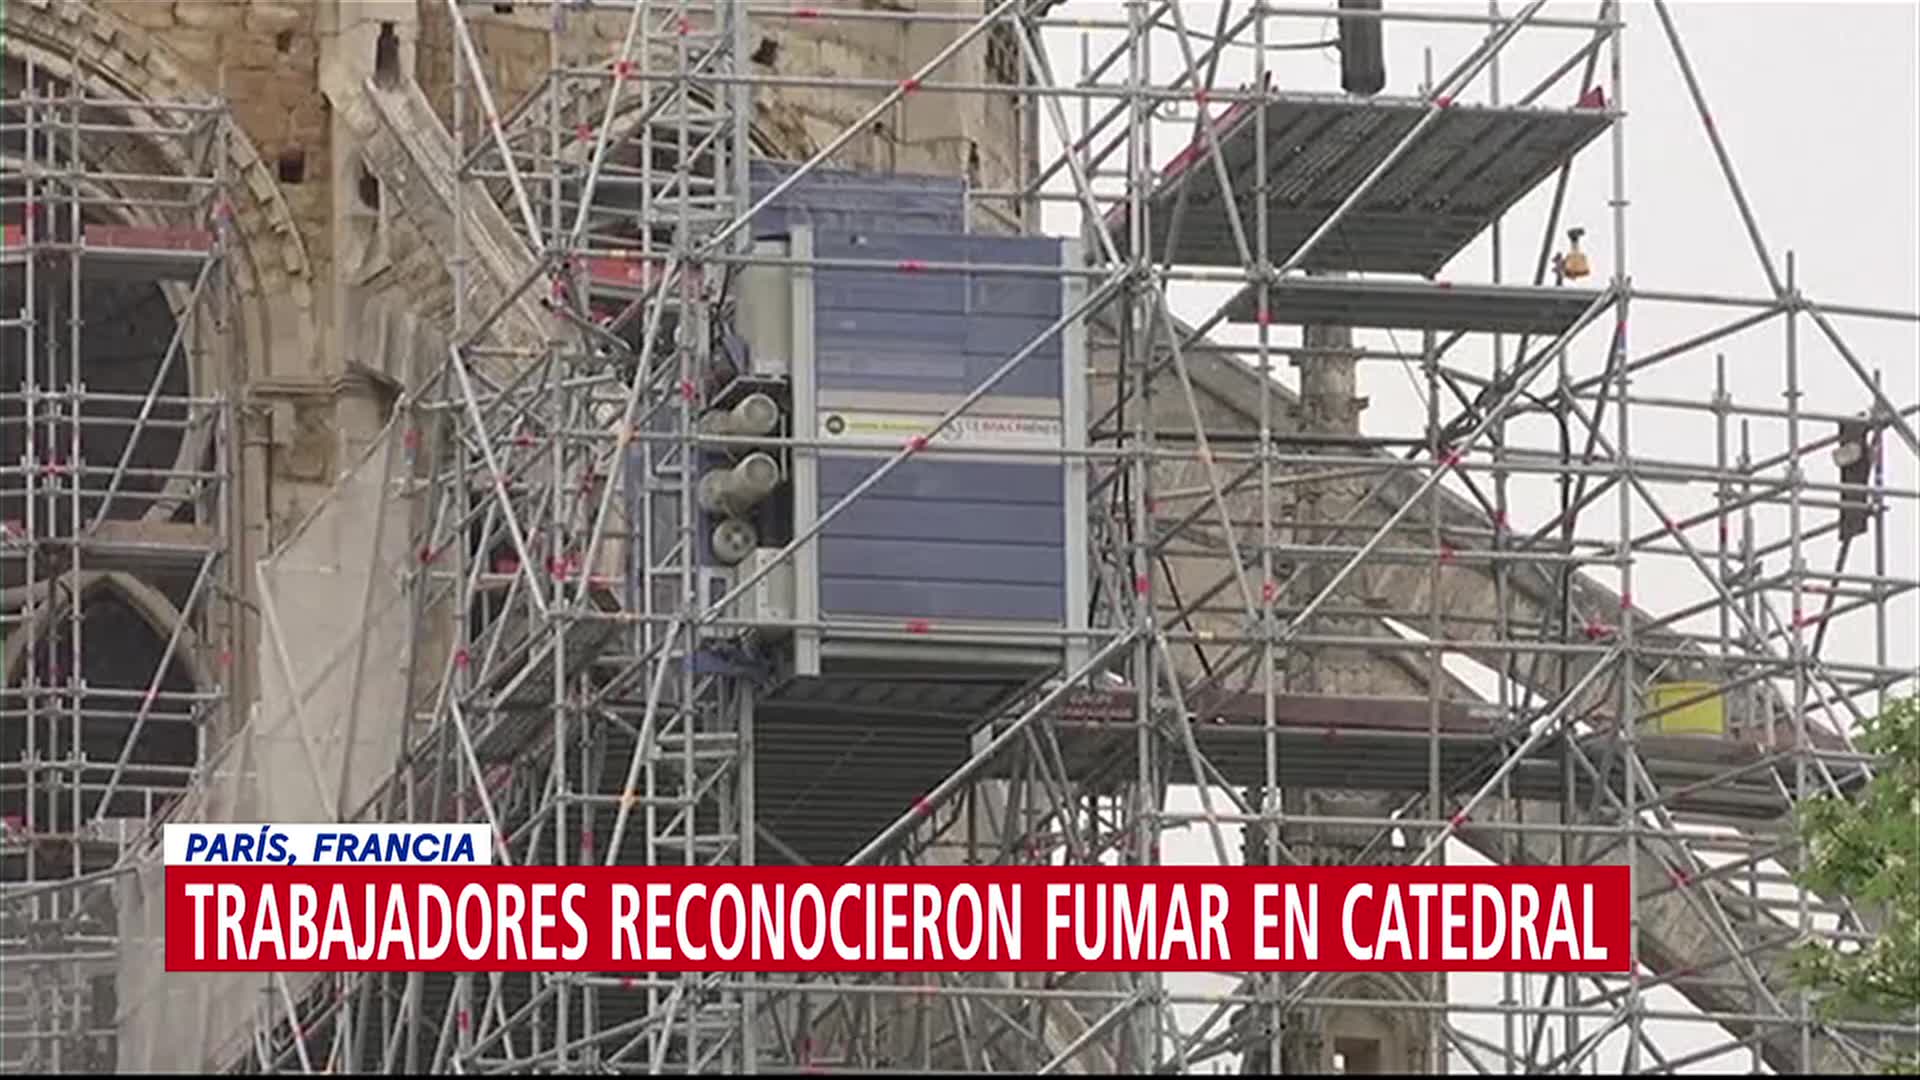 Obreros admiten que fumaban en zona de reconstrucción de Notre Dame